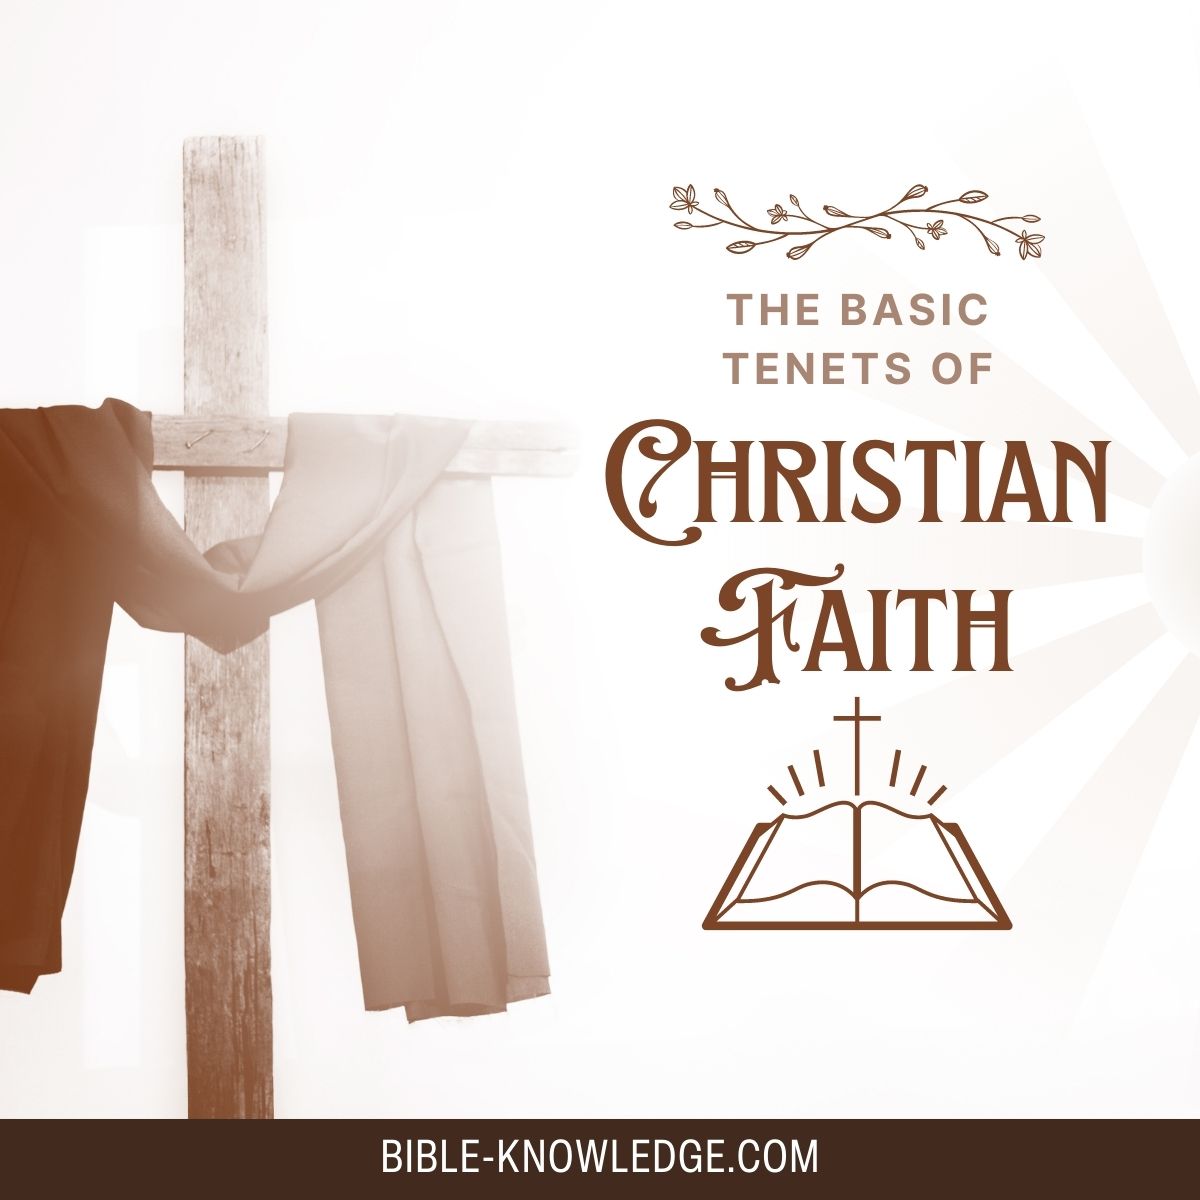 The Basic Tenets of Christian Faith